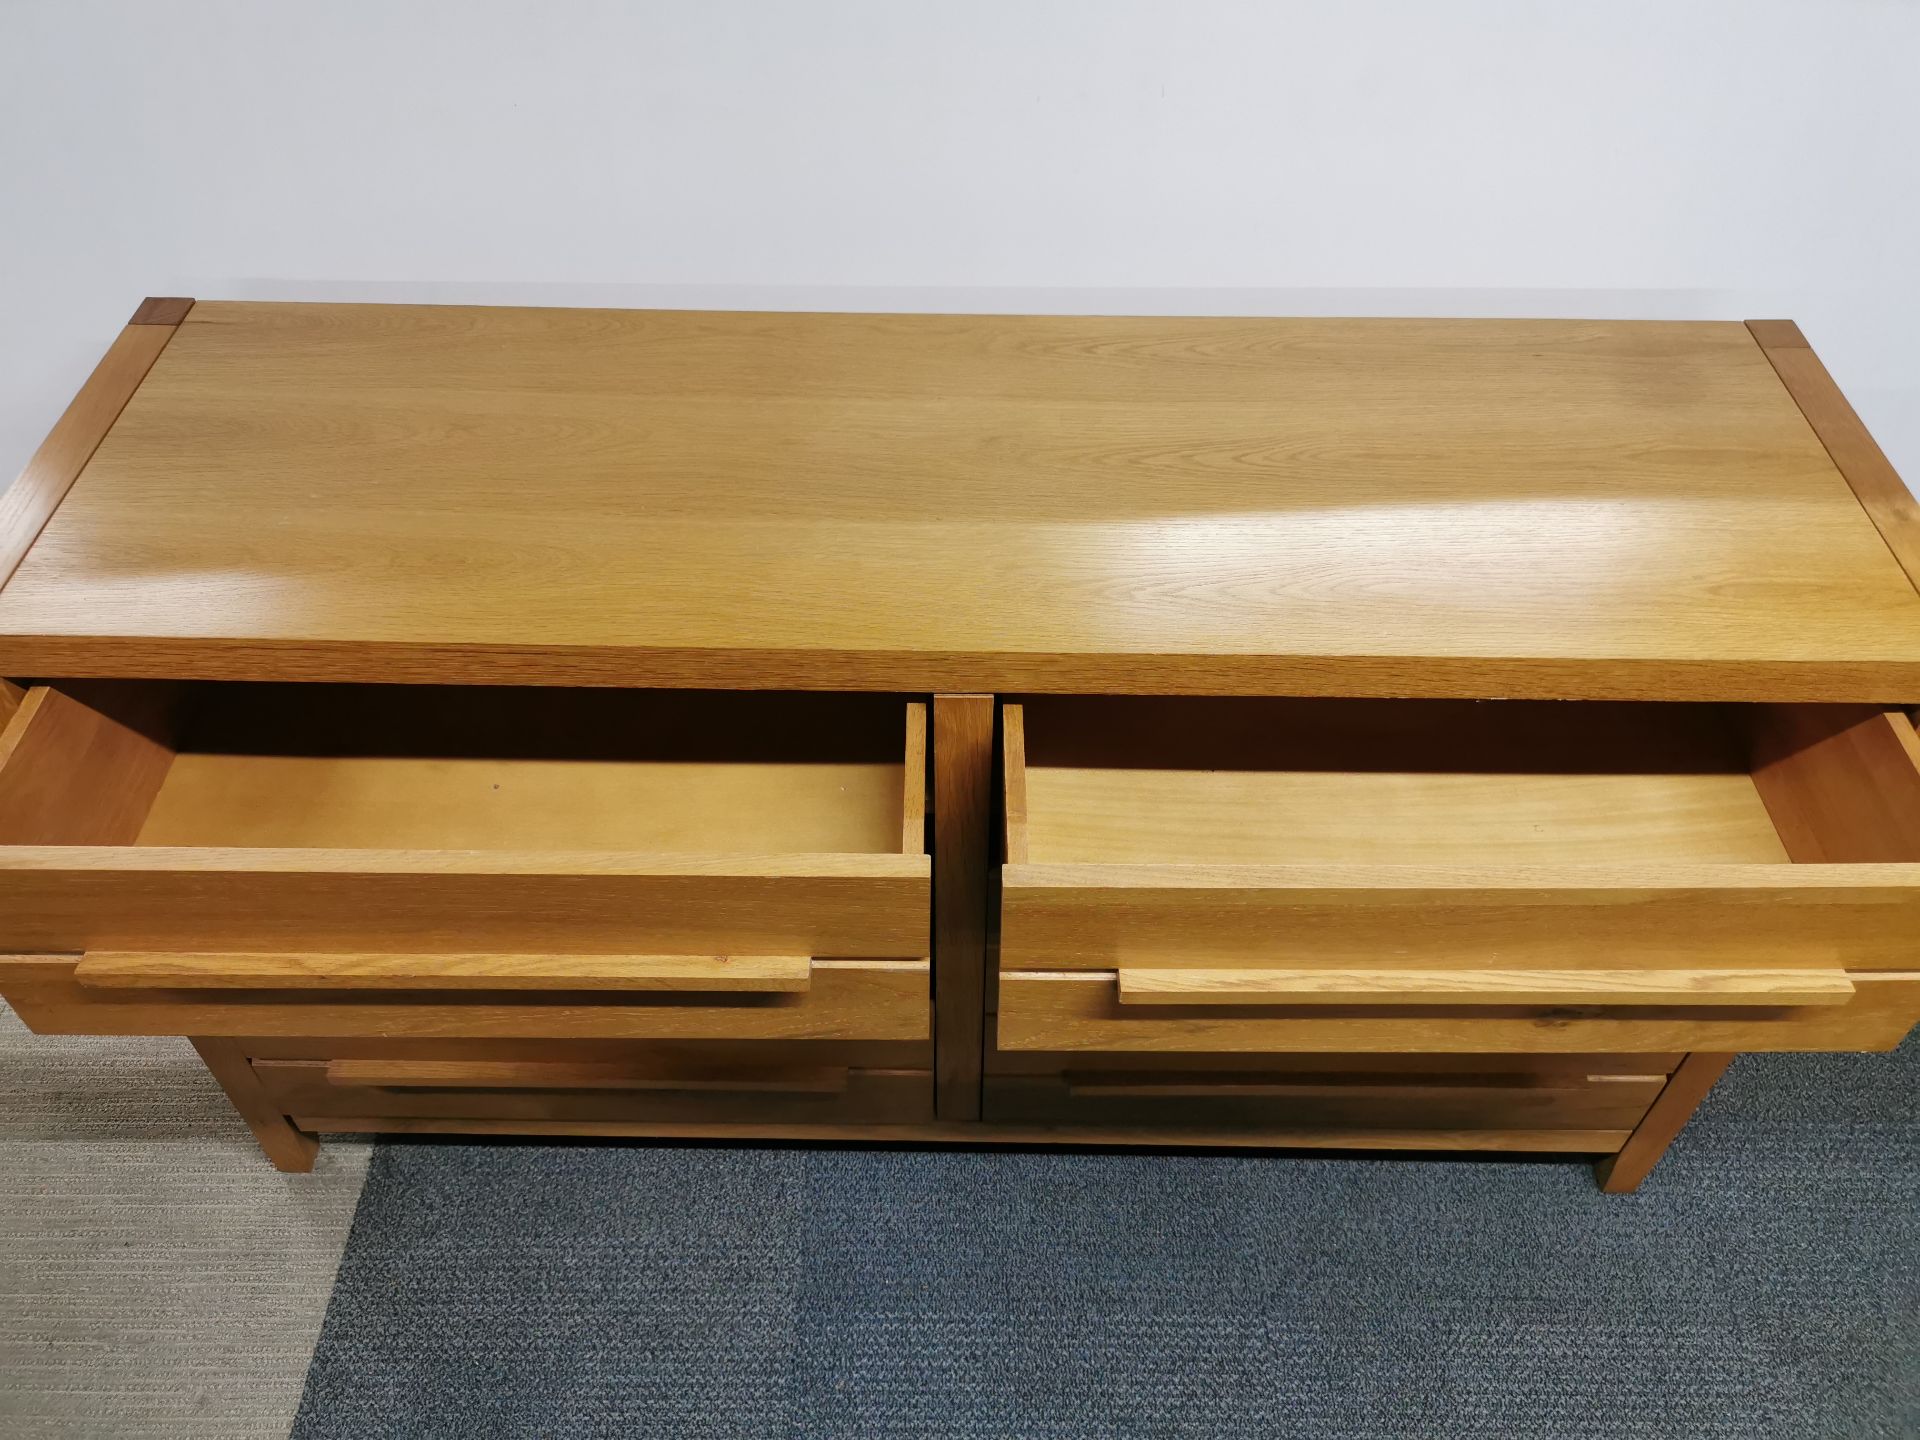 A heavy, light oak six drawer sideboard, 153 x 85 x 45cm. - Image 3 of 3